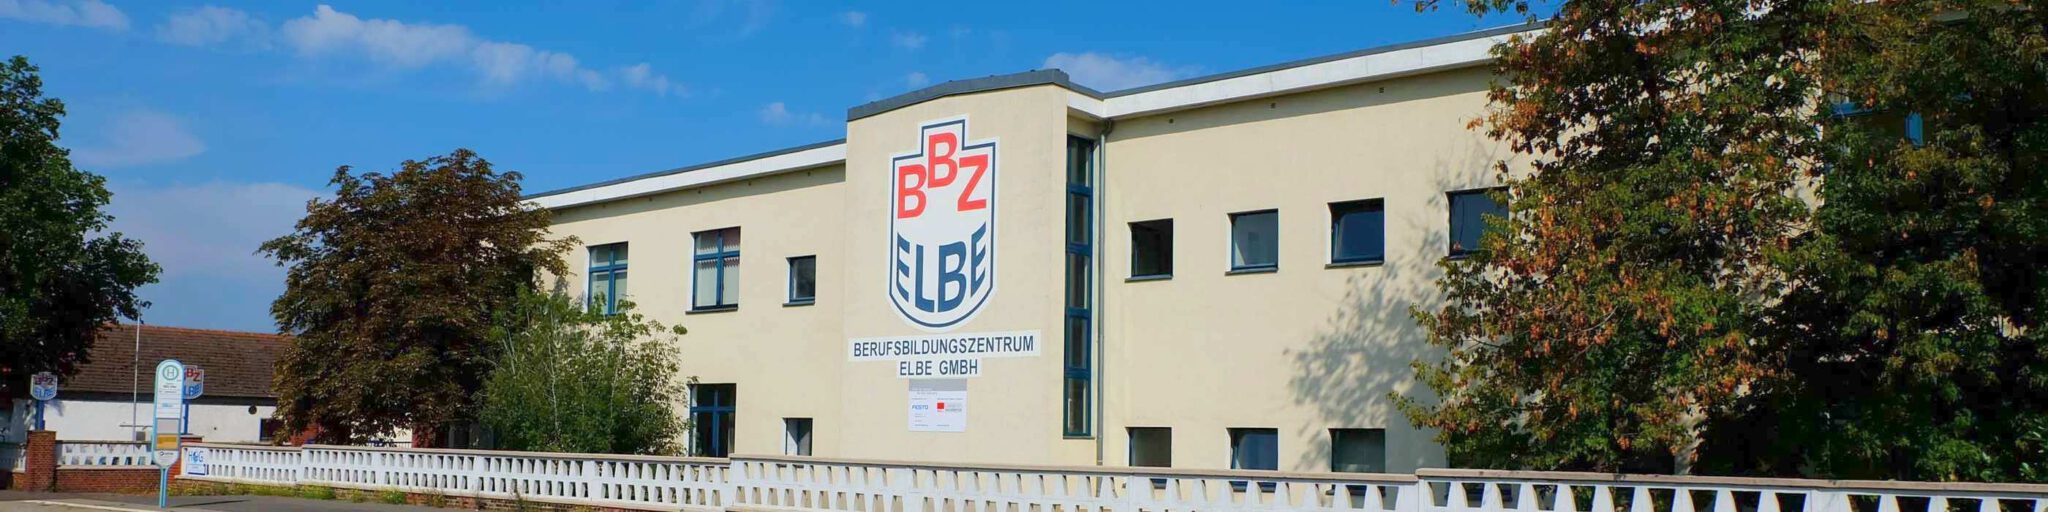 Bild 1 Berufsbildungszentrum Elbe GmbH in Lutherstadt Wittenberg